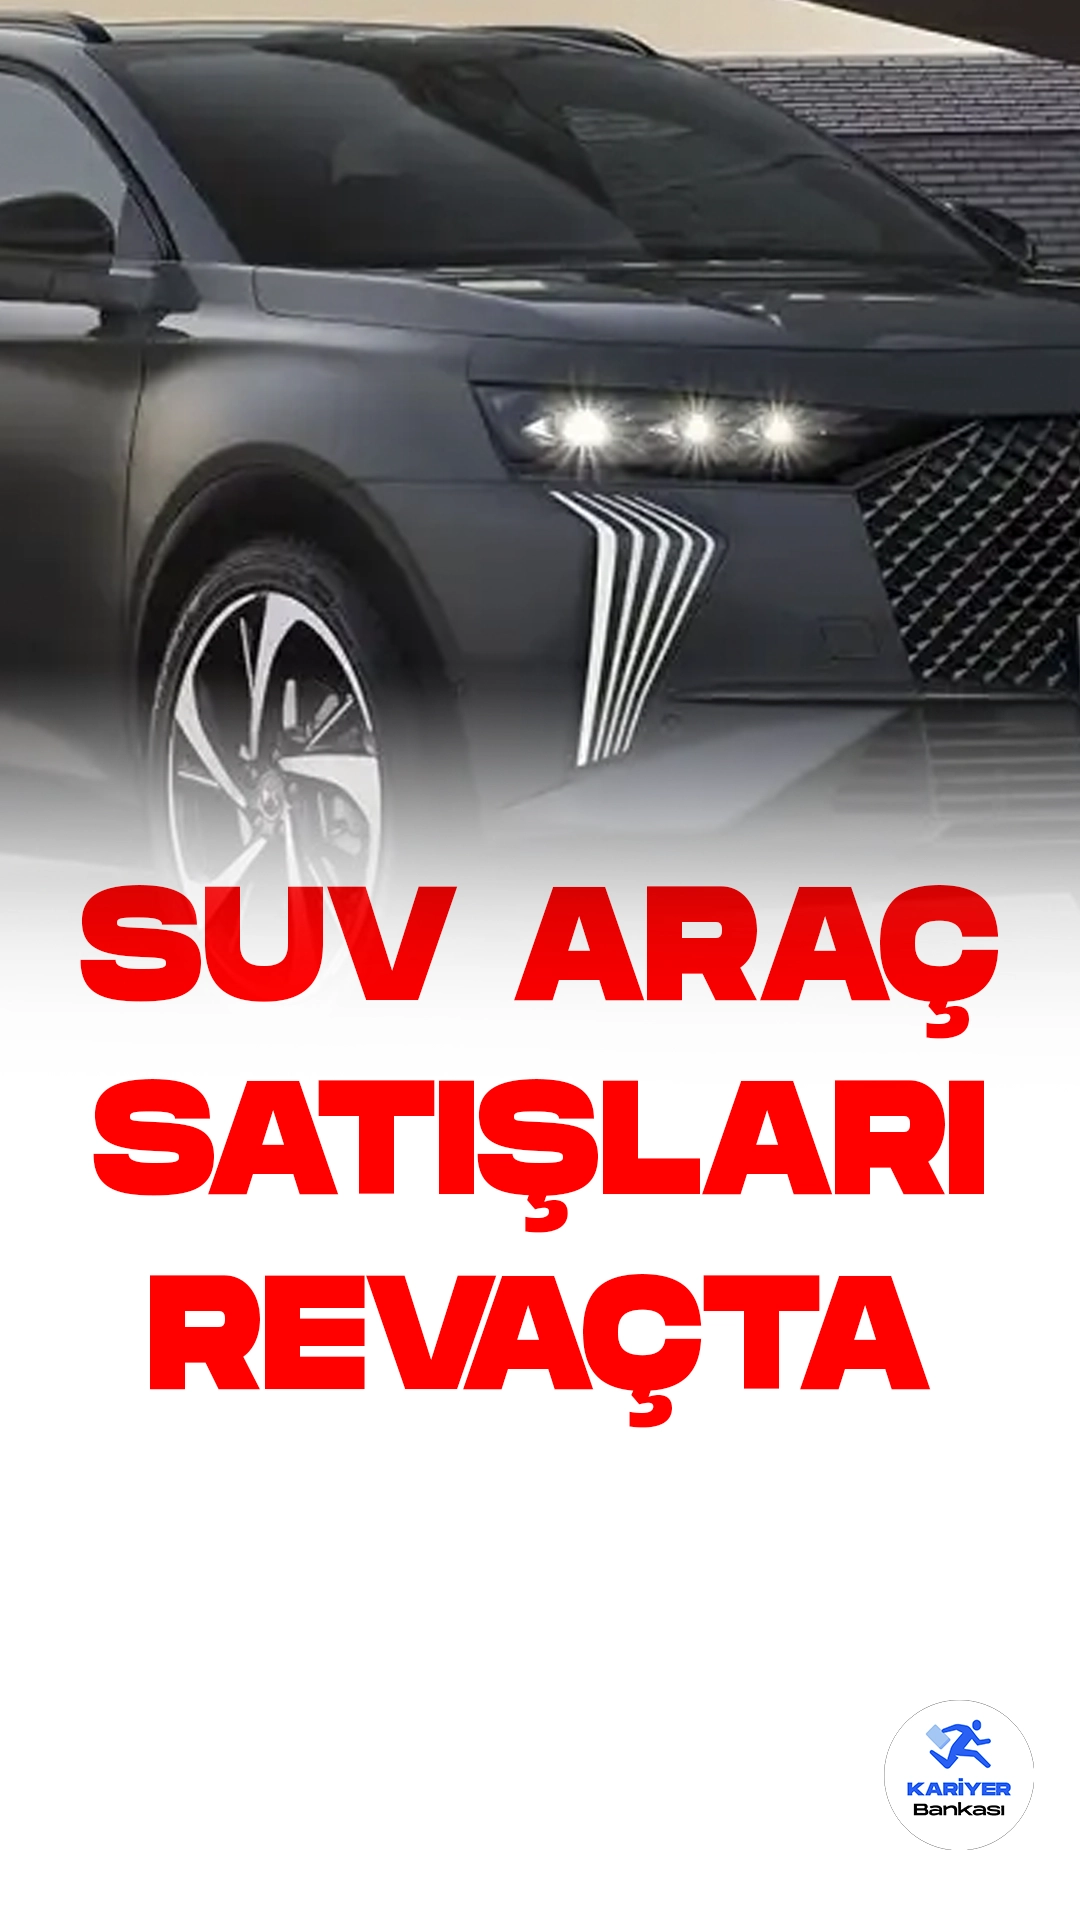 Türkiye otomobil pazarında bu yılın ilk altı aylık döneminde SUV gövde tipli otomobil satışları, 2022'nin aynı dönemine kıyasla %79,32 artış göstererek büyük bir yükseliş kaydetti. Bu artışla birlikte SUV otomobillerin pazar payı da %46'ya yükseldi.